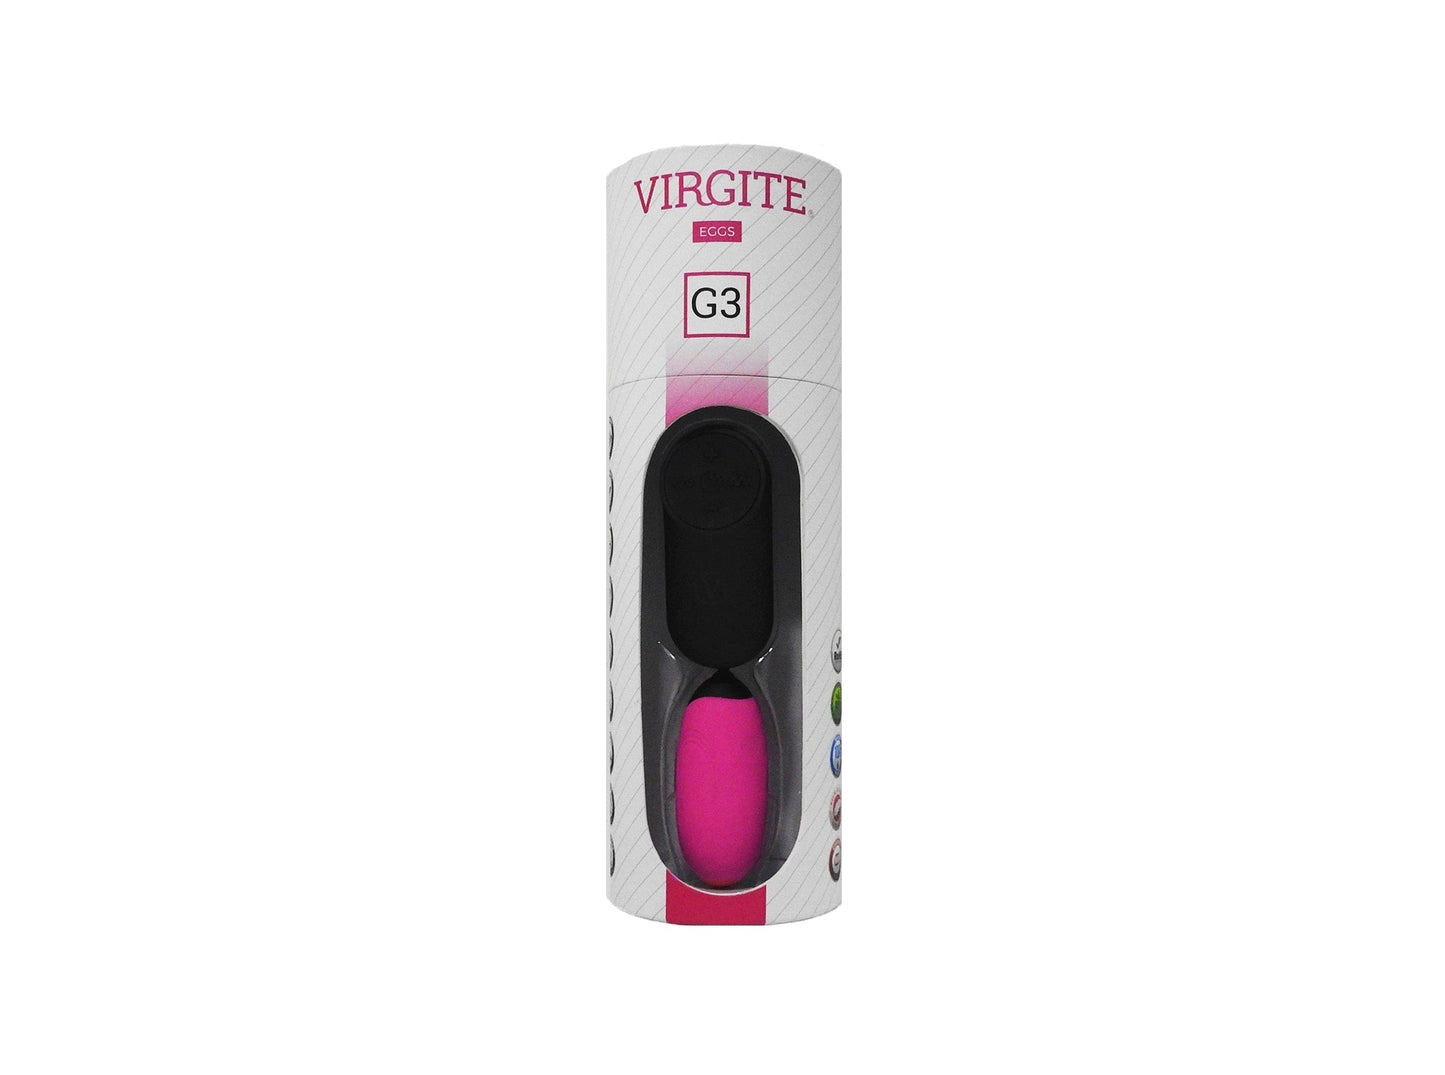 Virgite - Vibrerend Eitje Oplaadbaar Met Draadloze Afstandsbediening G3 - Roze